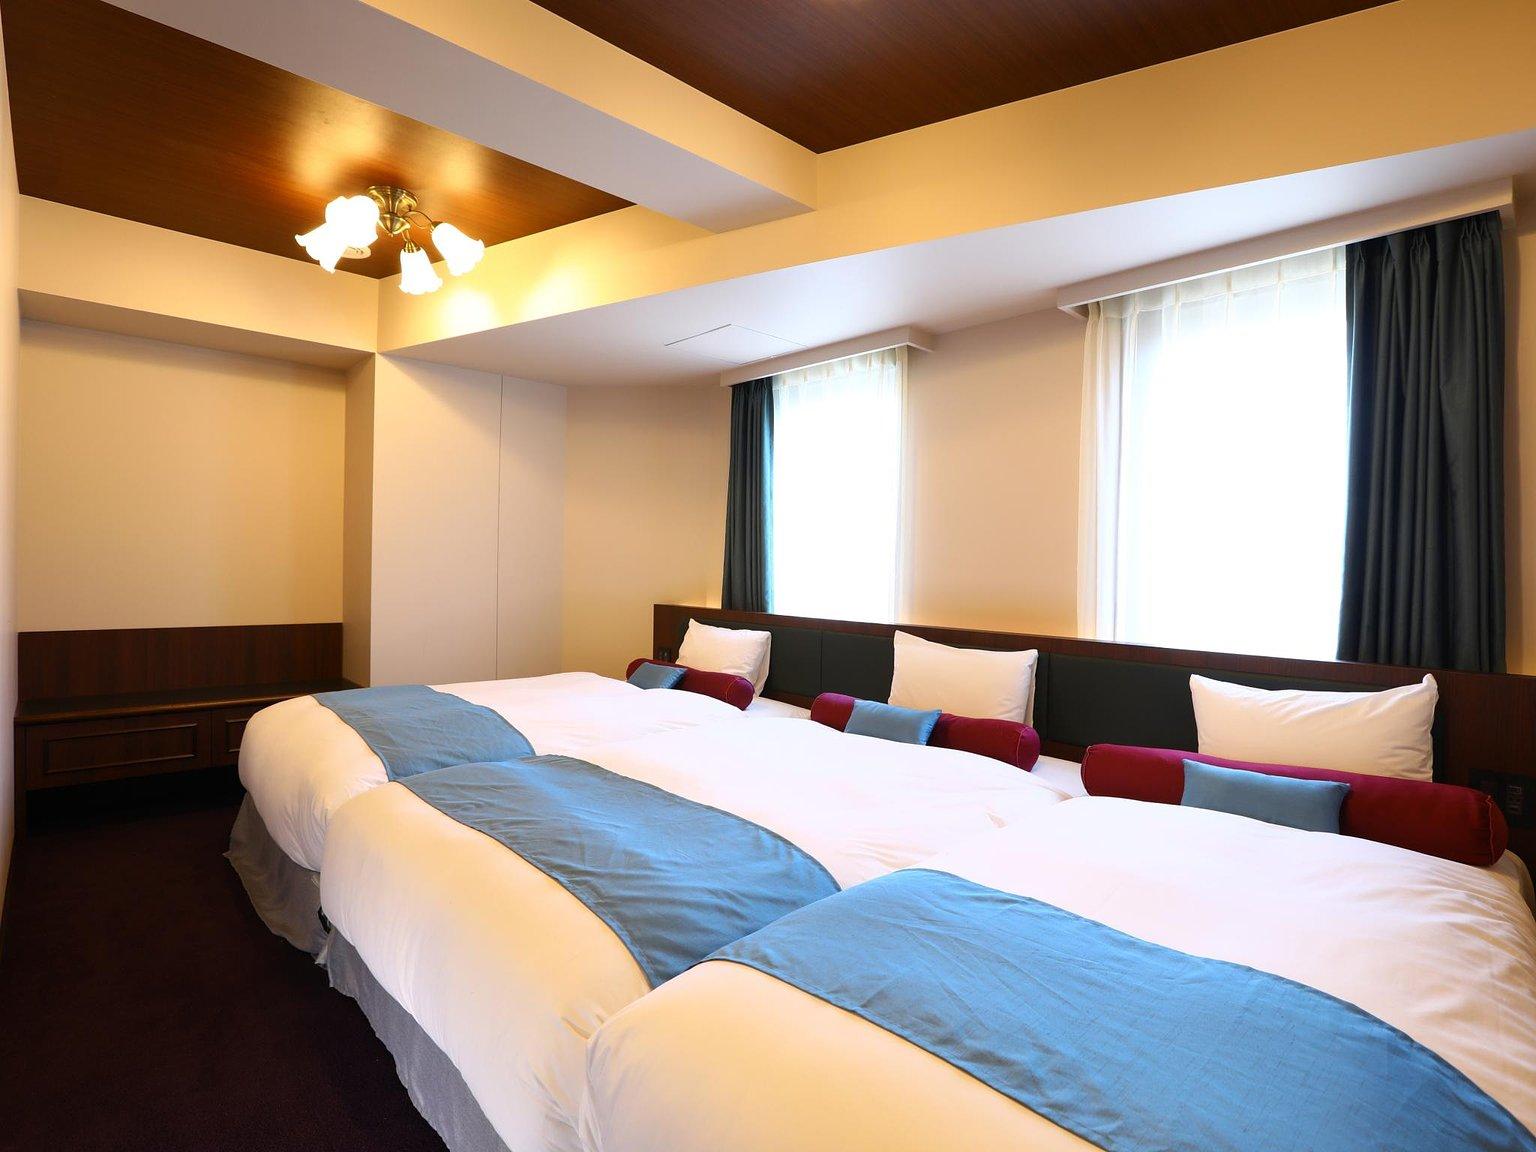 Triple Room Non-Smoking - WING国际精选酒店-池袋 / Hotel Wing International Select Ikebukuro